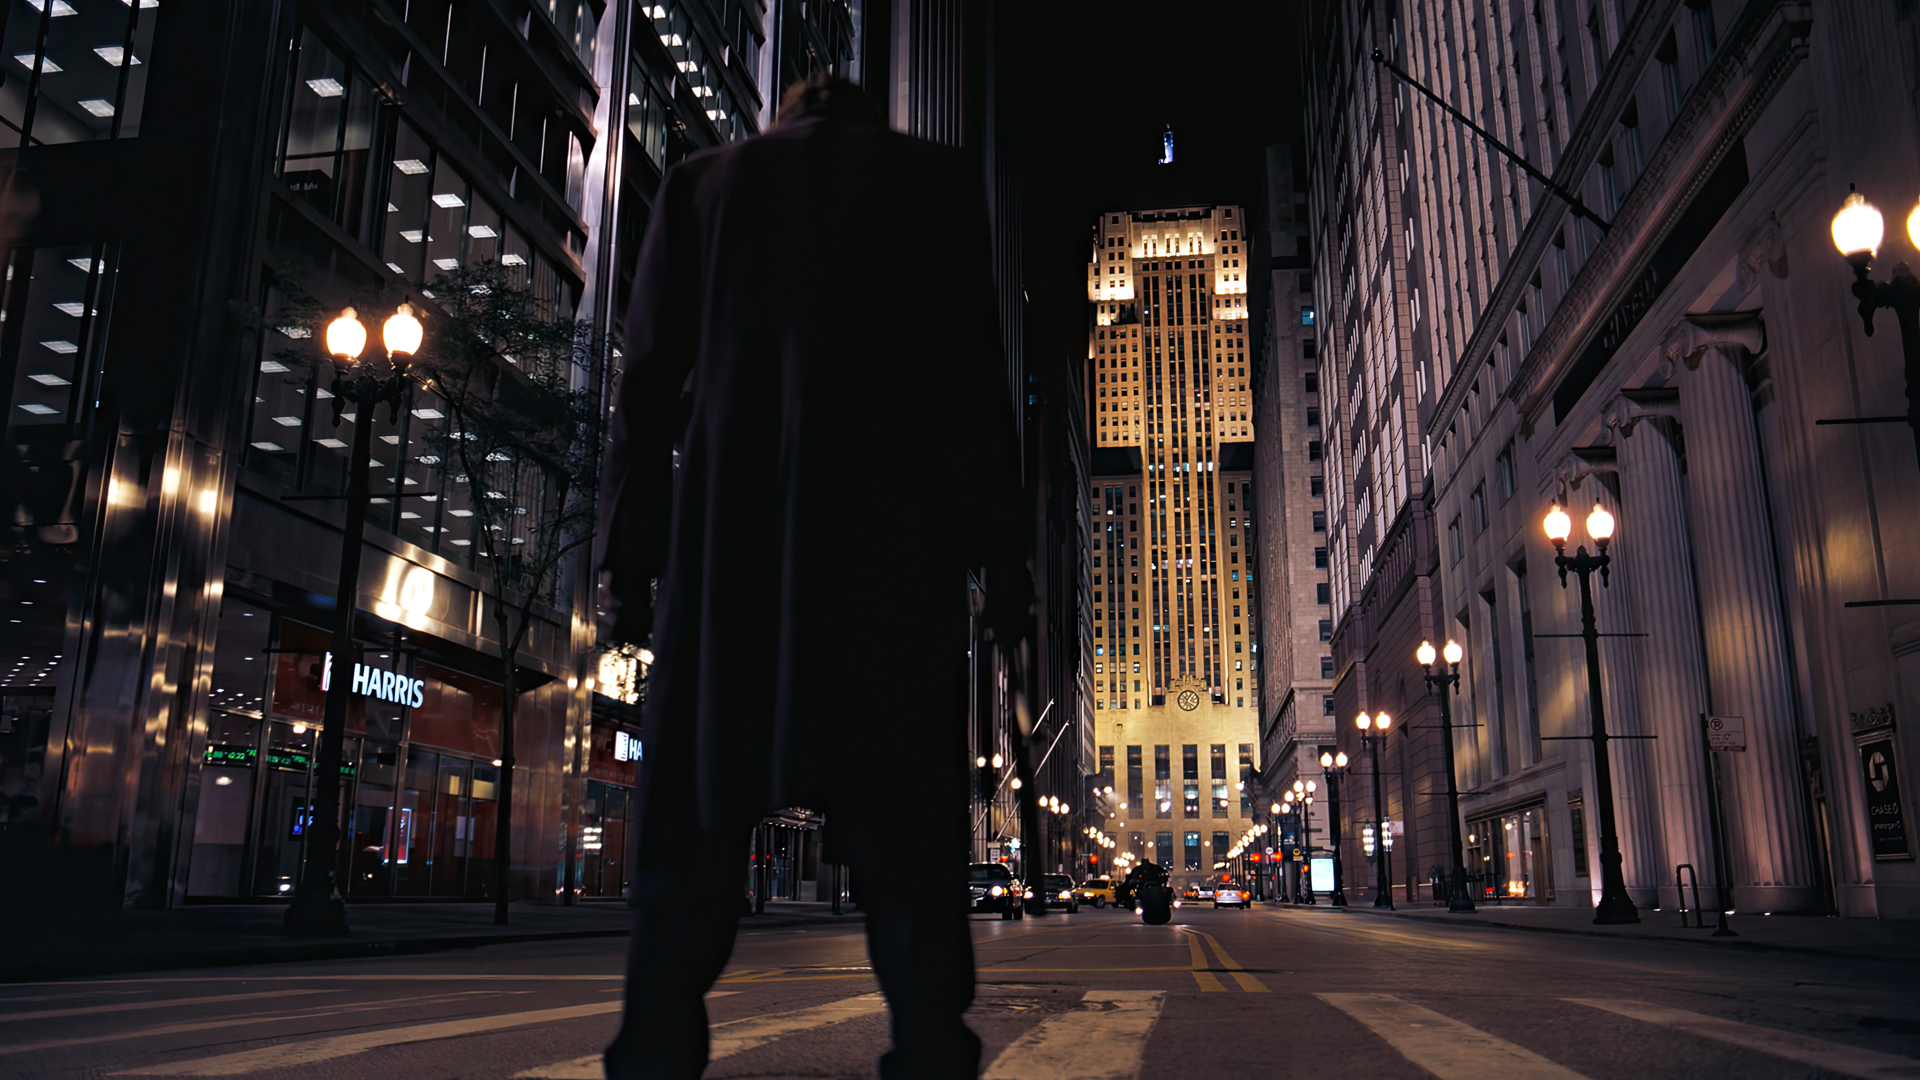 The Dark Knight Movies Film Stills Street Gotham City Joker Batman Batpod Skyscraper 1920x1080